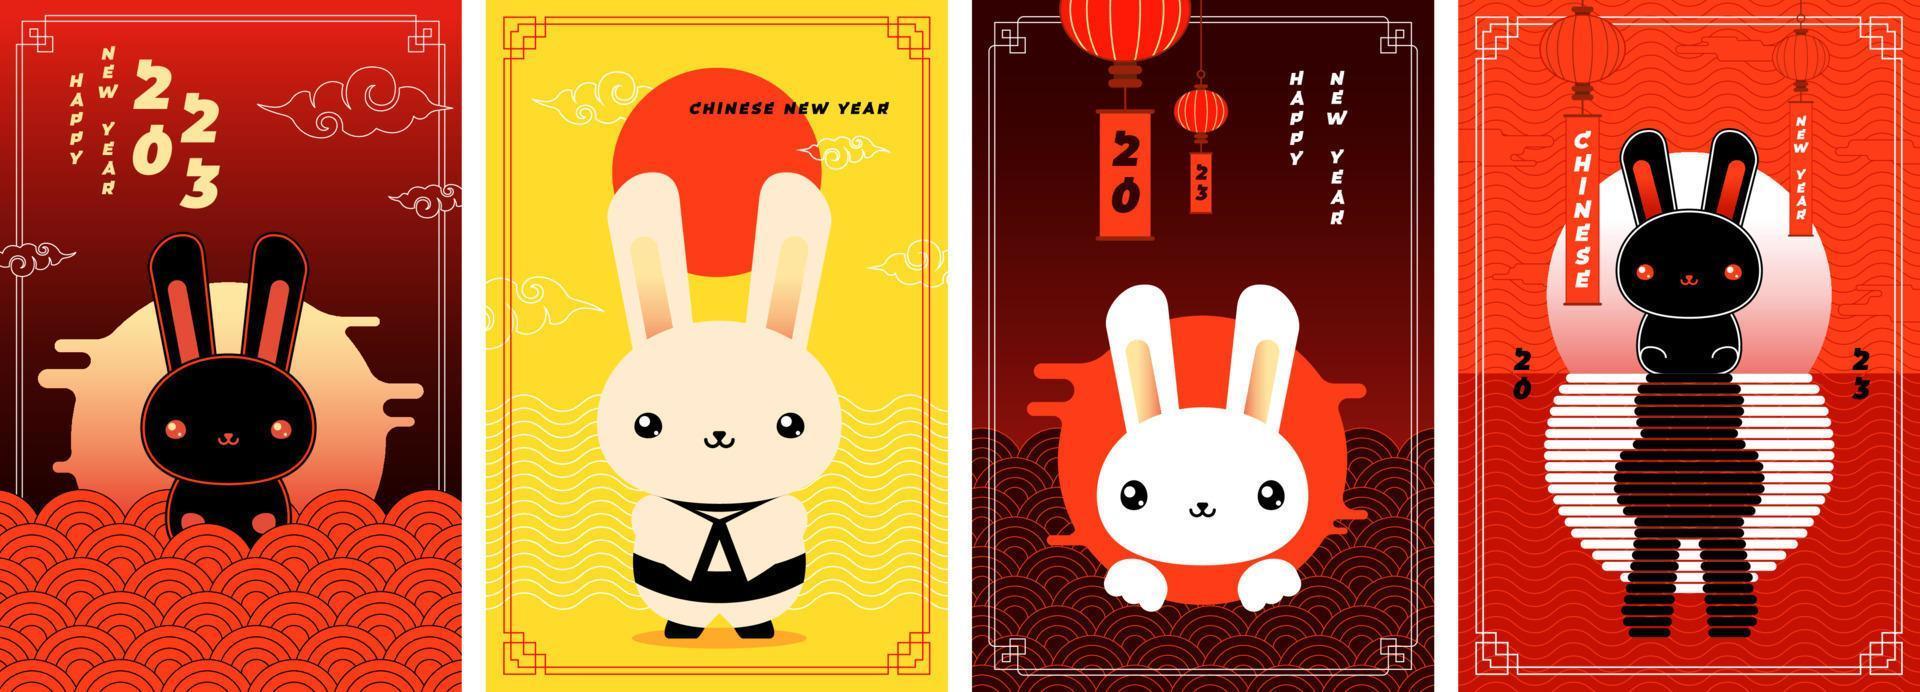 kinesisk ny år av svart vatten kanin affisch uppsättning. hälsning kort samling av Kina traditionell årlig zodiaken symbol hare. asiatisk trendig abstrakt eps design plakat mallar till östra kalender 2023 vektor